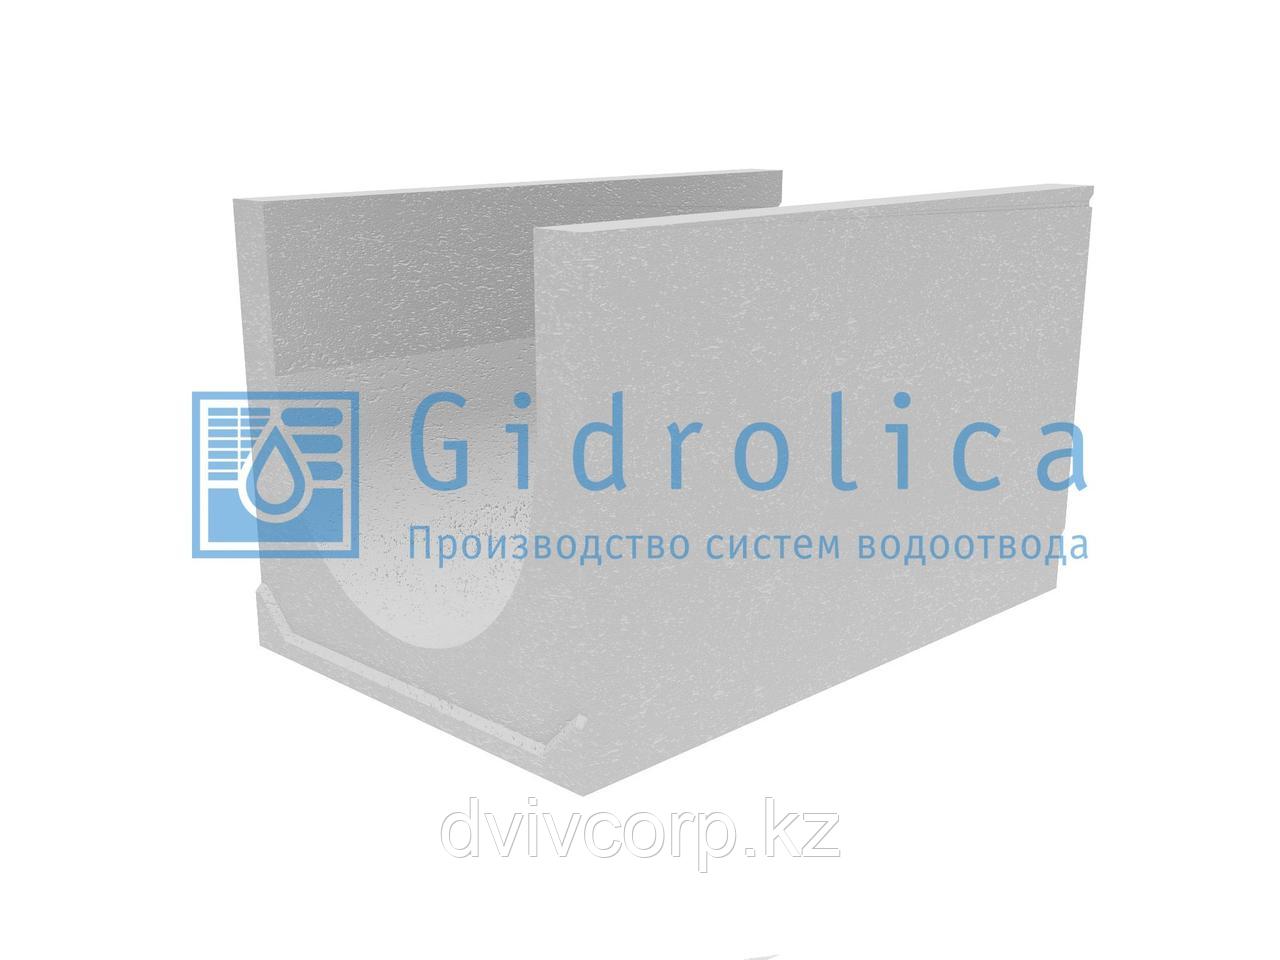 Лоток водоотводный бетонный коробчатый (СО-500мм), с уклоном 0,5%  КUу 100.65(50).60,5(51,5) - BGU-XL, № 31